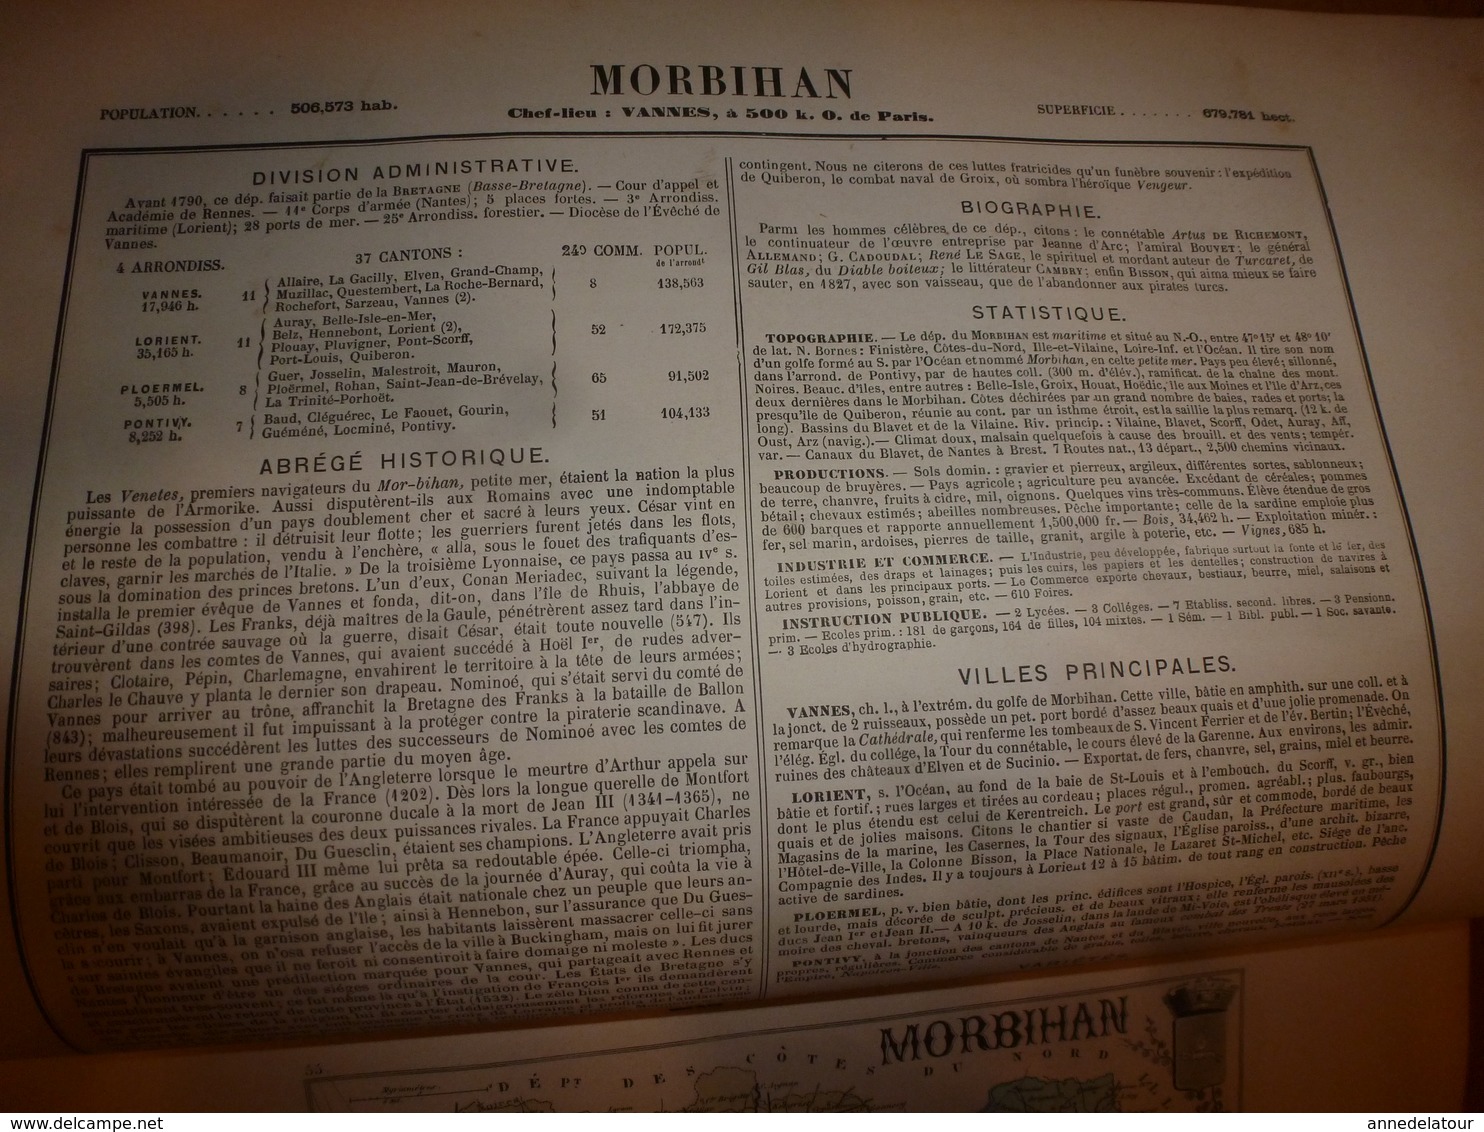 1880 MORBIHAN (Vannes,Lorient,Ploermel,Pontivy,etc) Carte Géographique-Descriptive:grav.taille douce-Migeon,géographe.